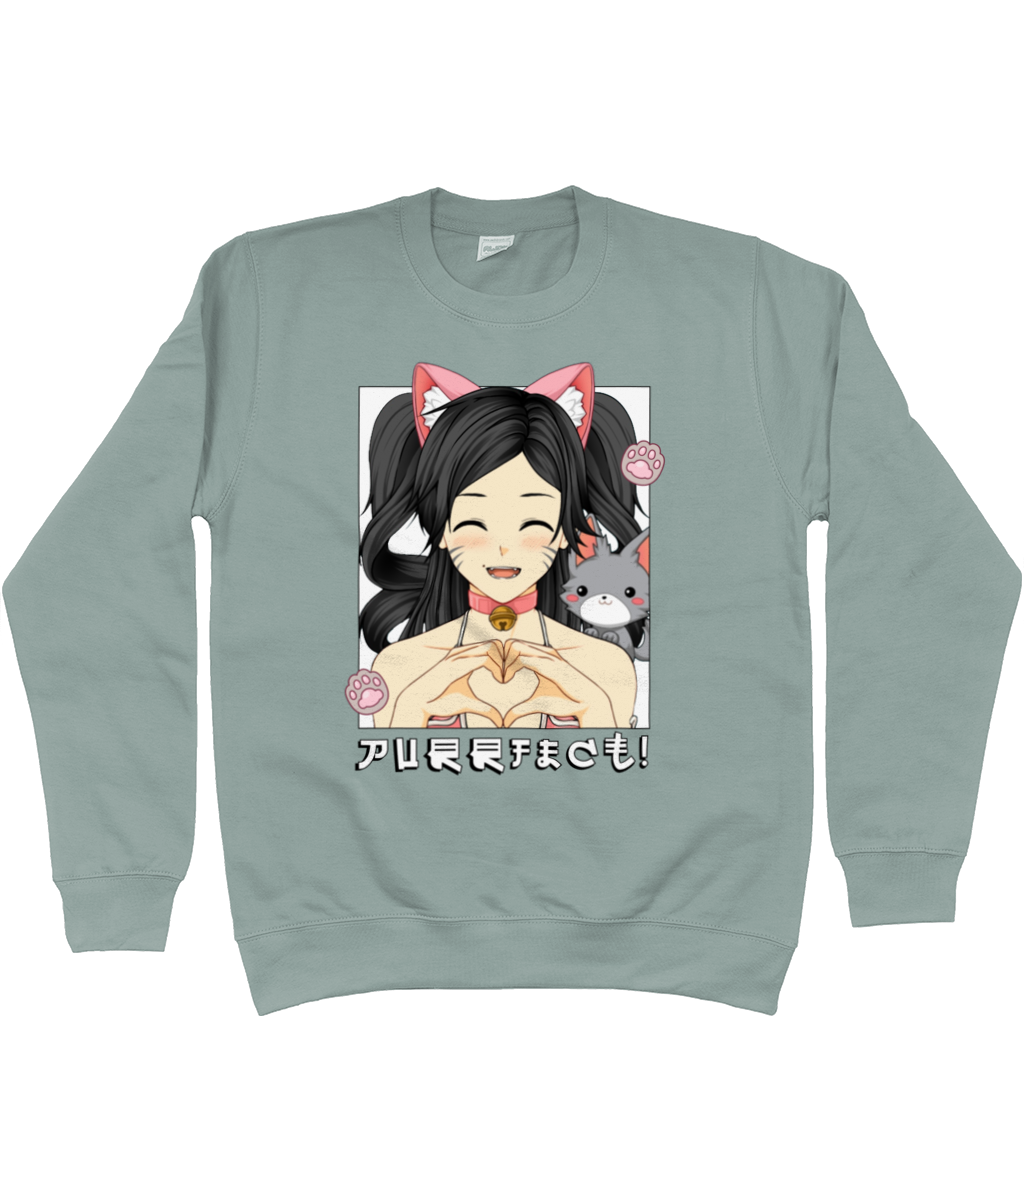 Purrfect Anime Girl Sweatshirt